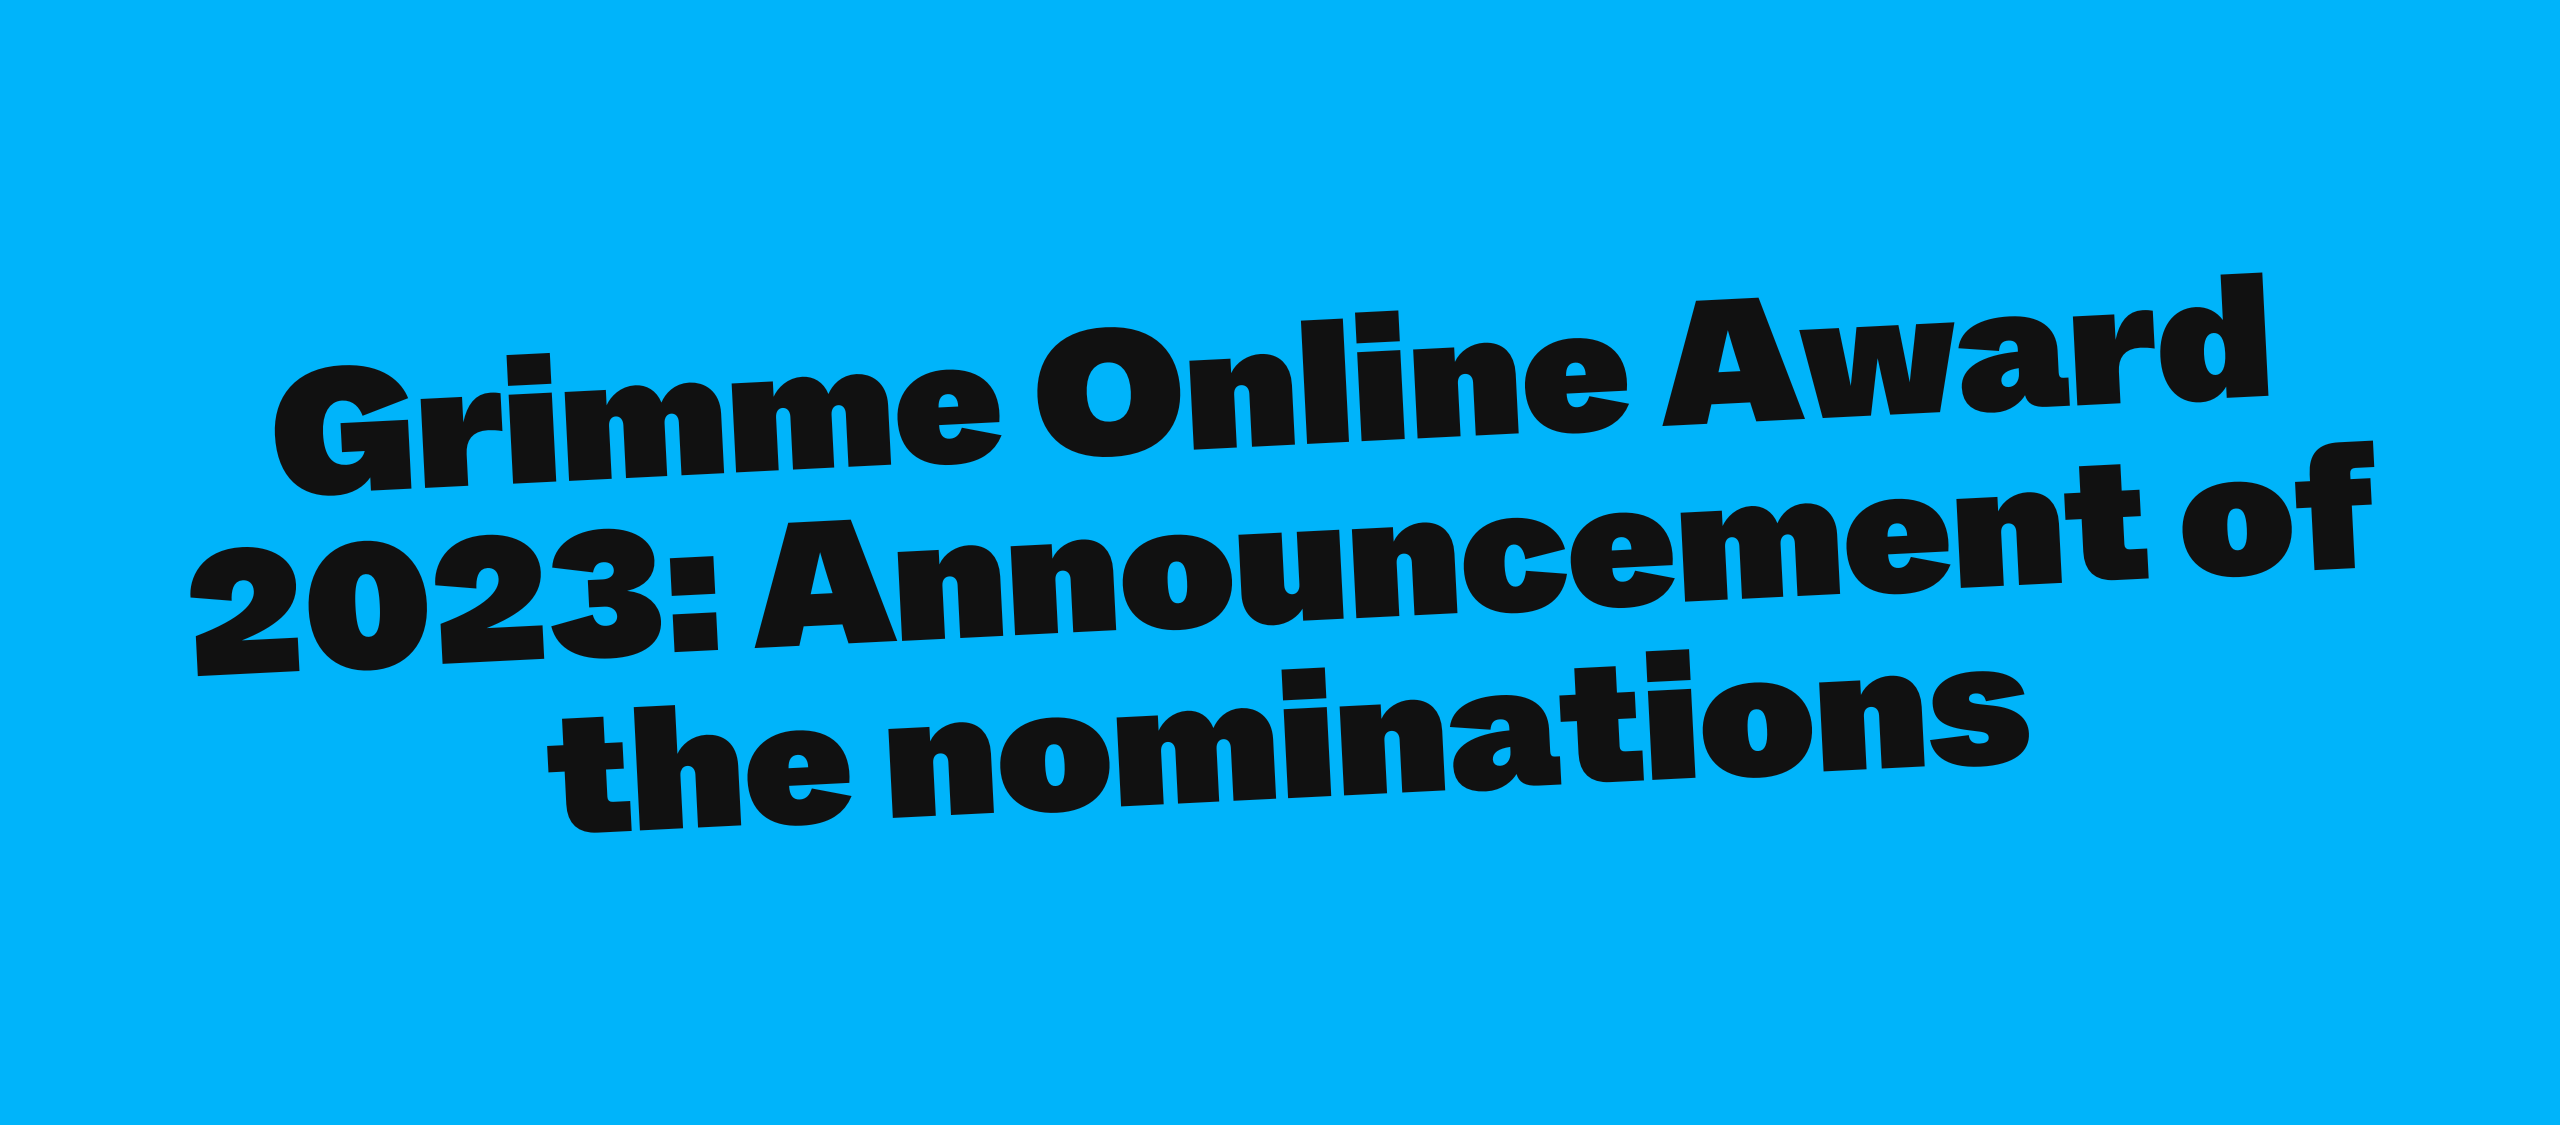 Grimme Online Award 2023: